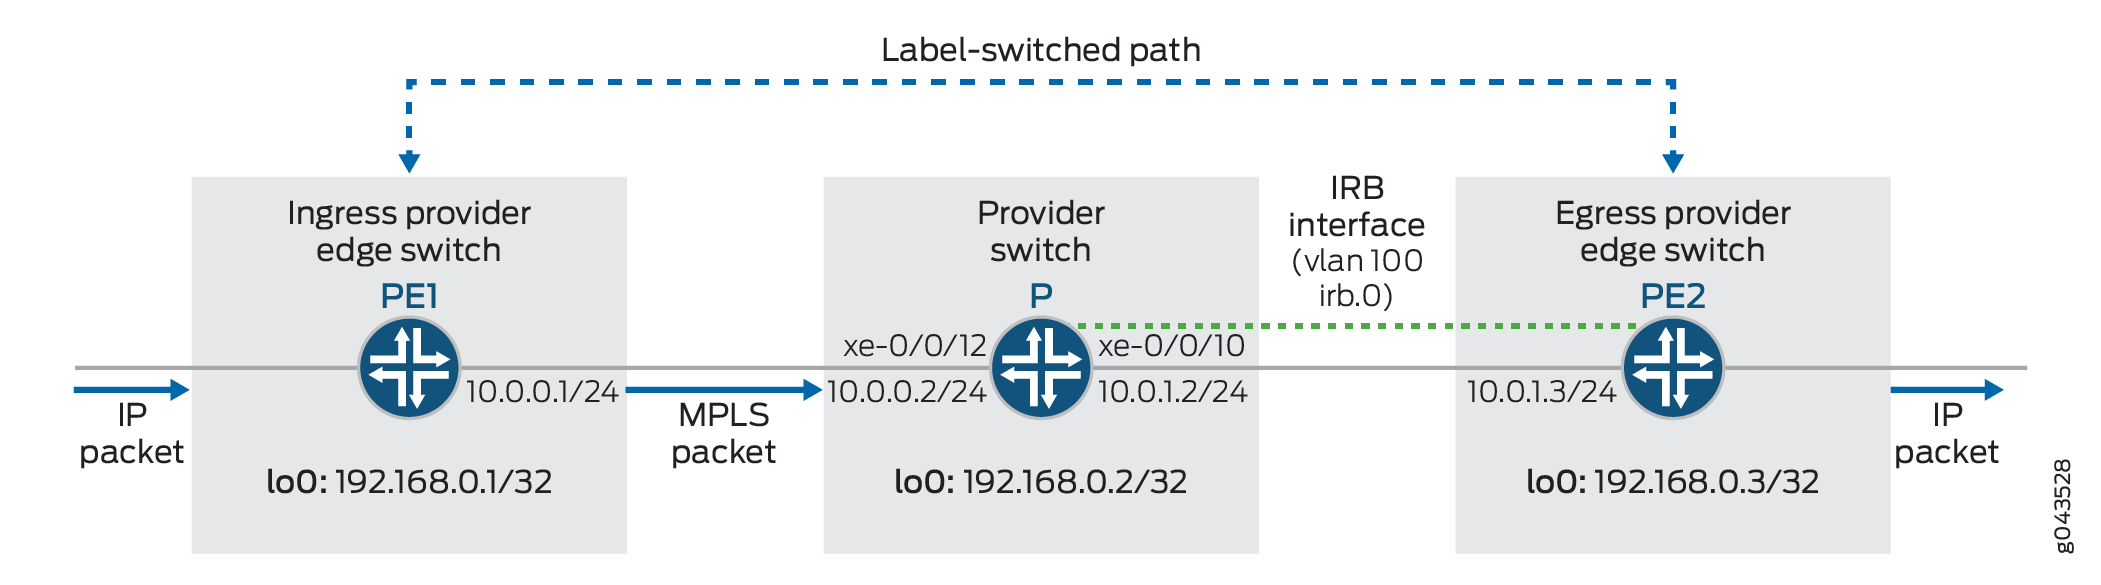 Топология IRB по MPLS ядра сети